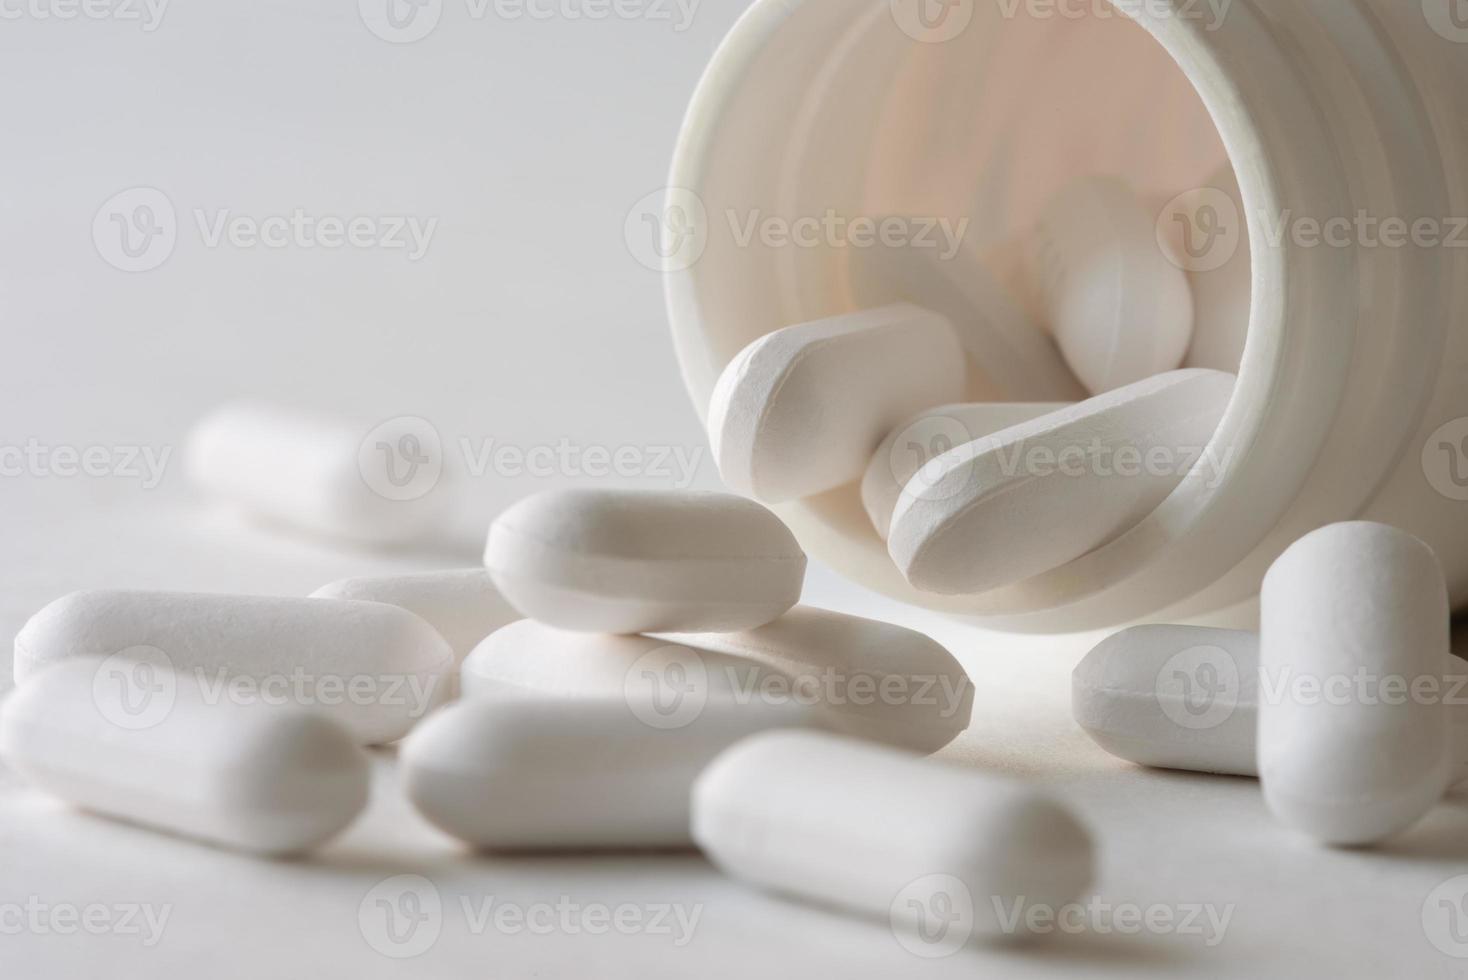 tabletas de acetafetamina derramadas de la botella foto